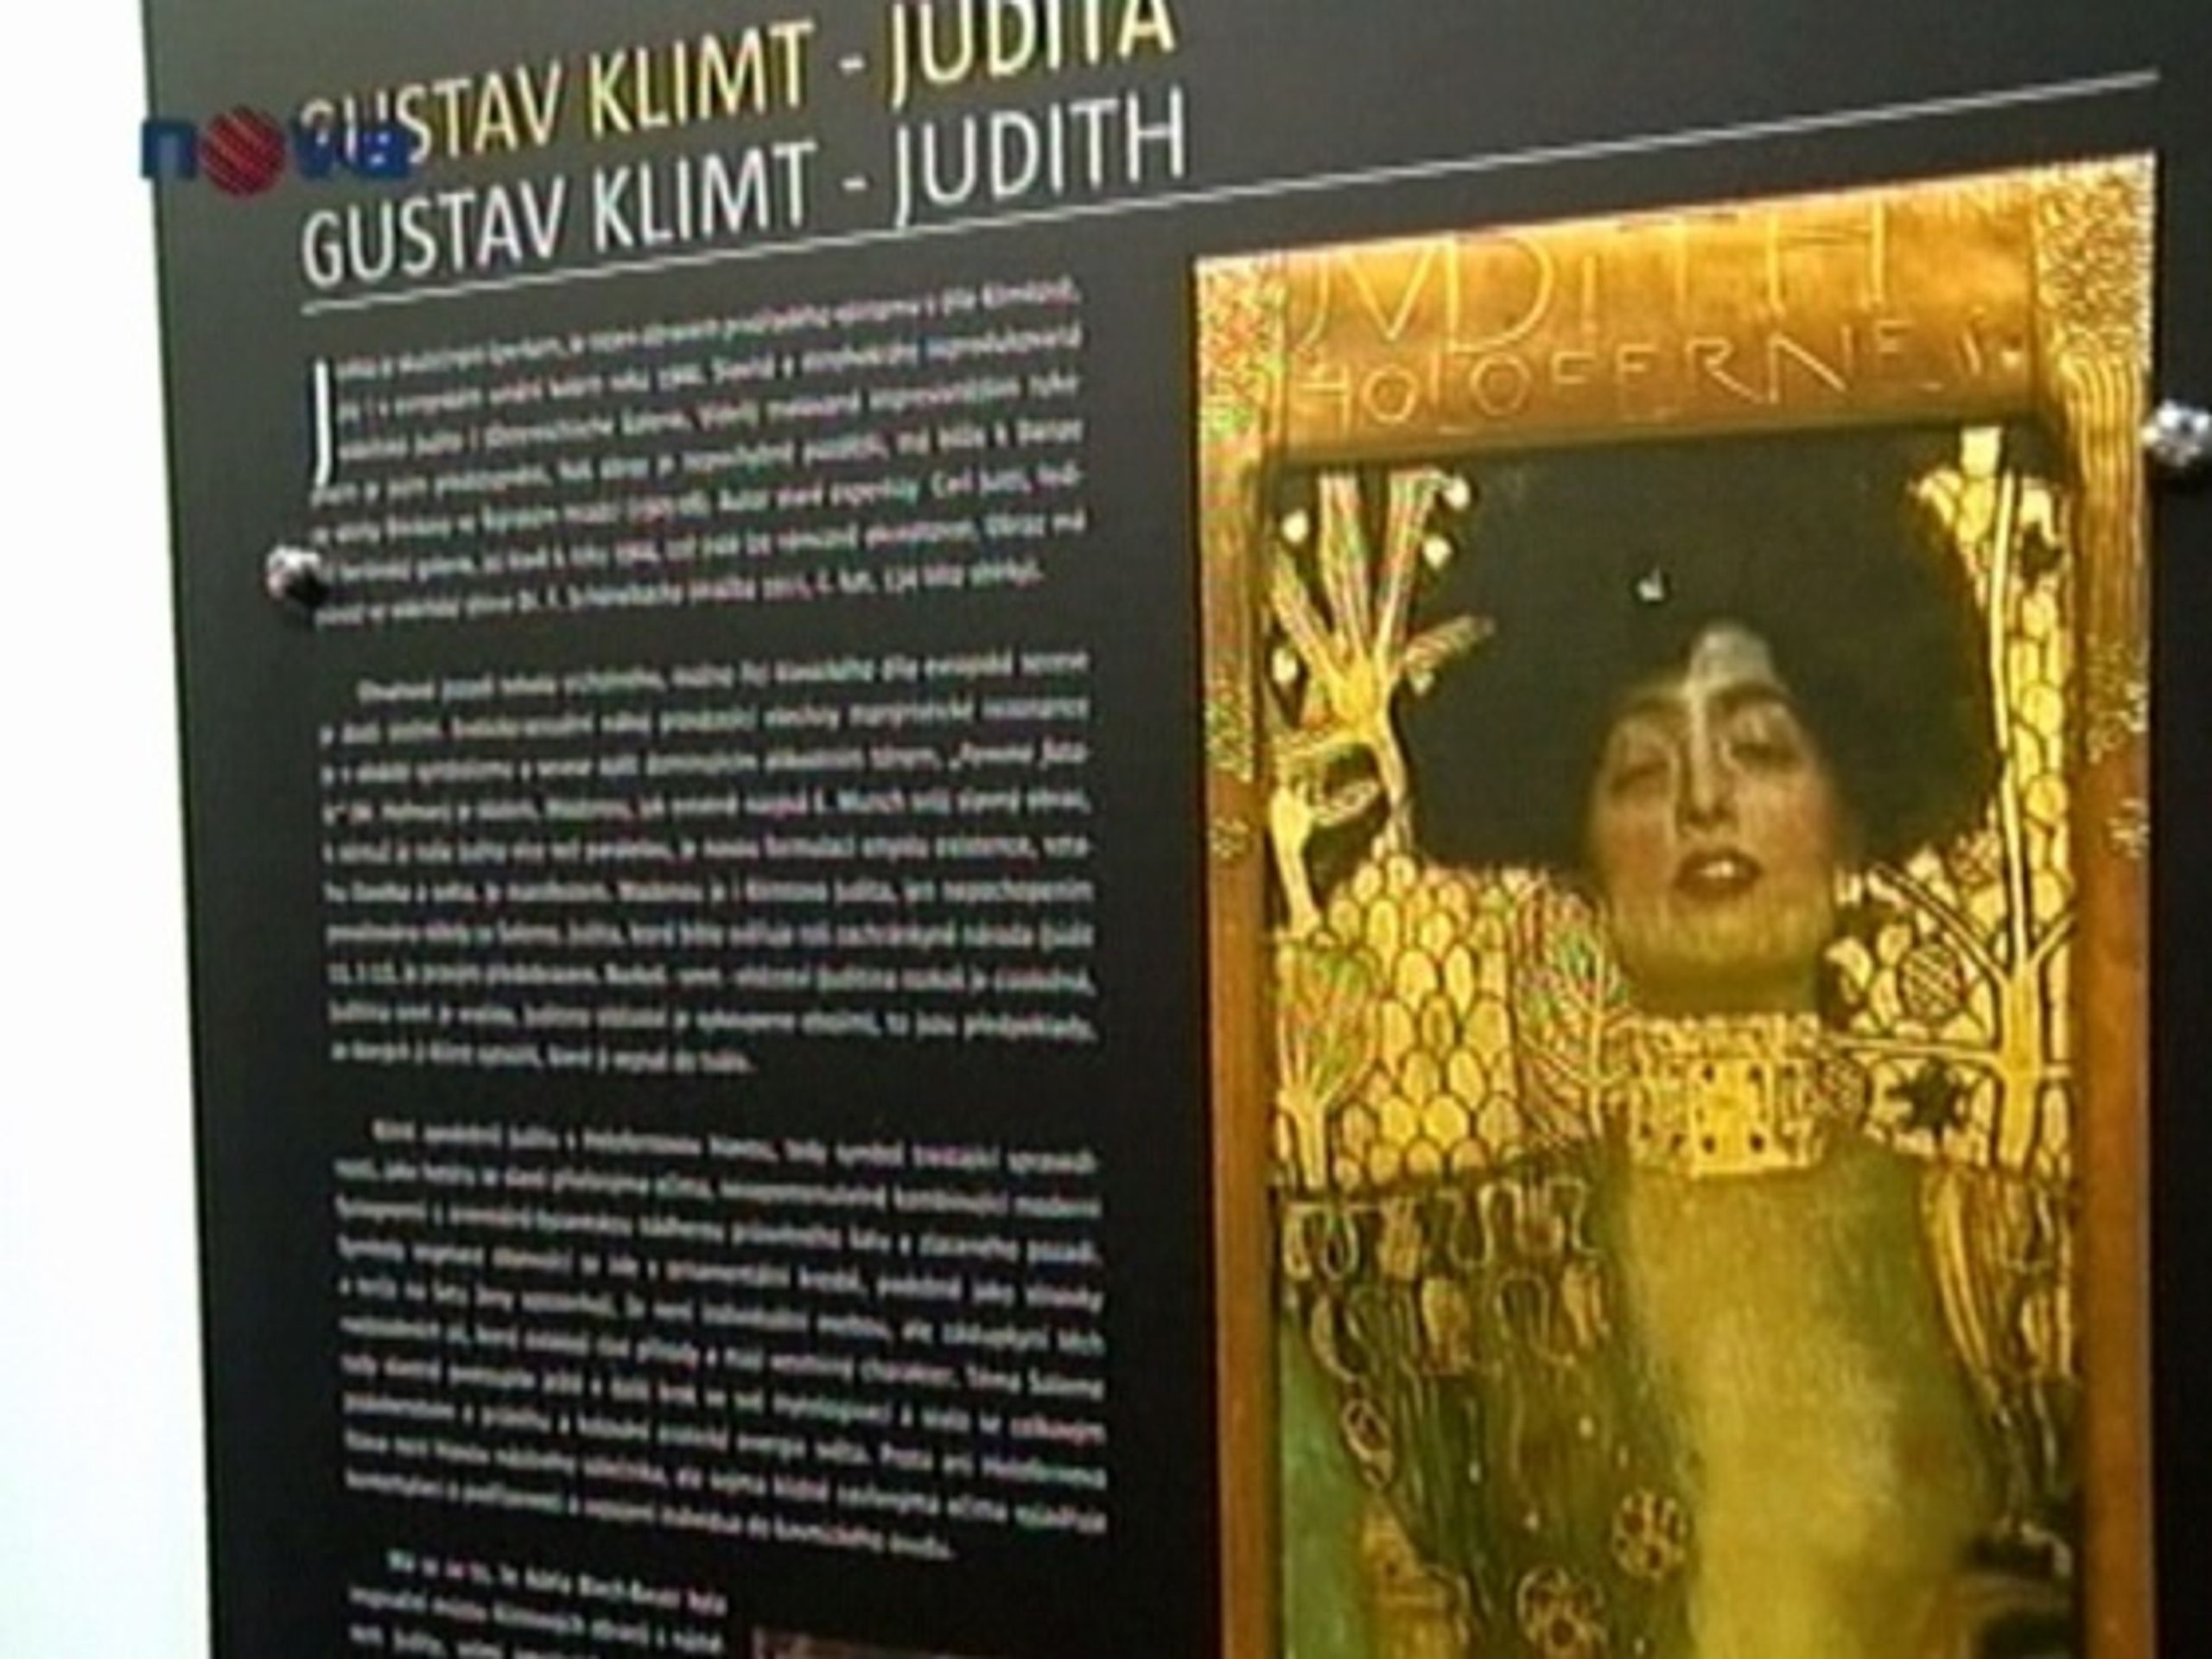 Judita od Gustava Klimta vystavena v Ostravě - Klimtův malířský klenot vystaven v Ostravě (1/3)